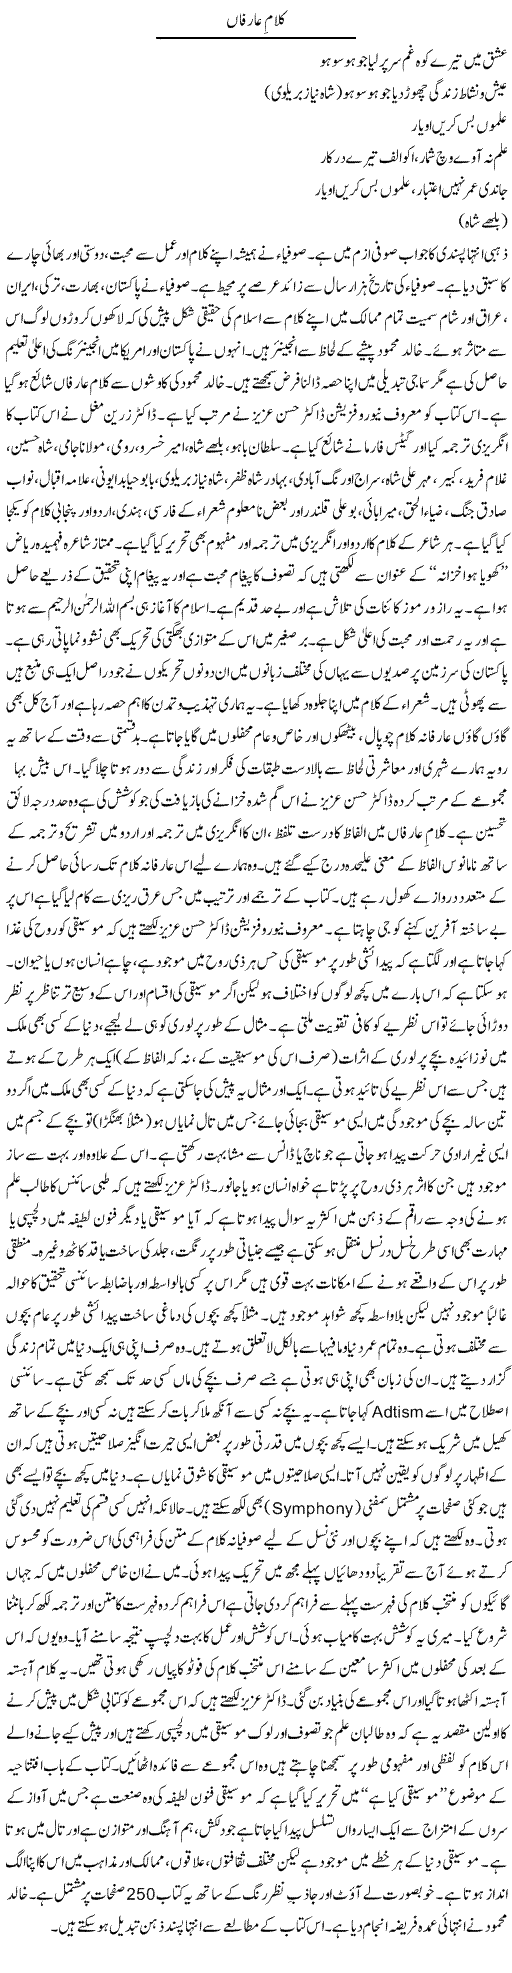 Kalaam Aarifan | Tausif Ahmad Khan | Daily Urdu Columns